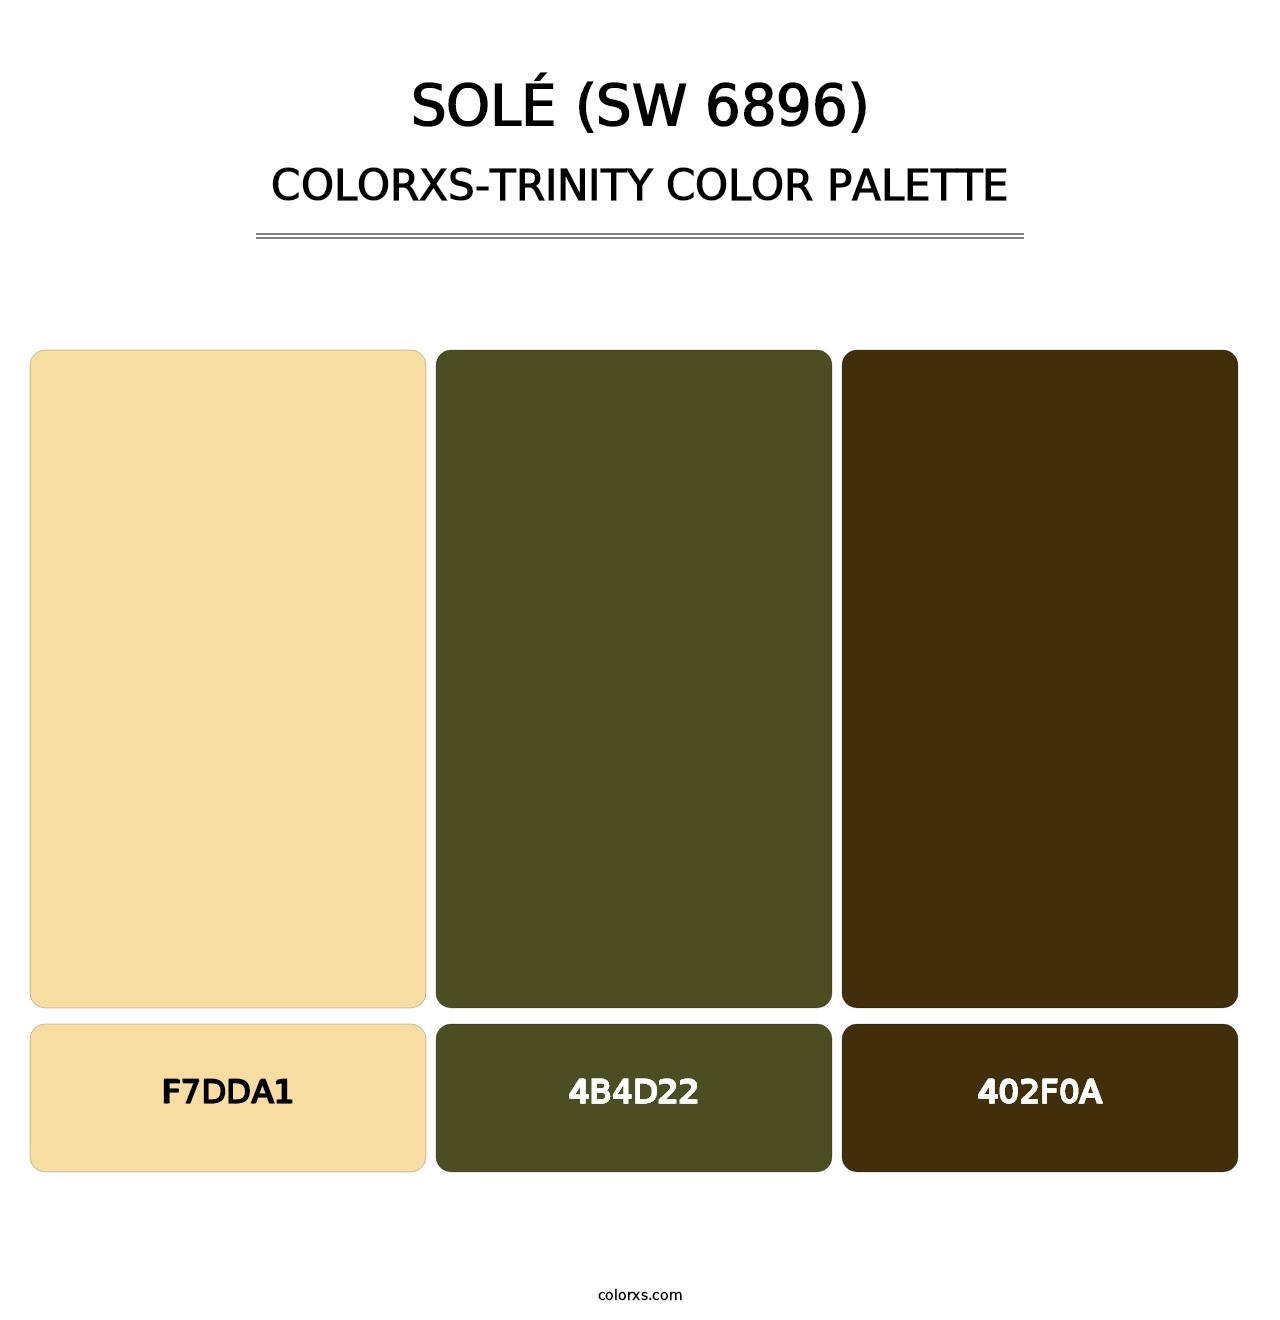 Solé (SW 6896) - Colorxs Trinity Palette